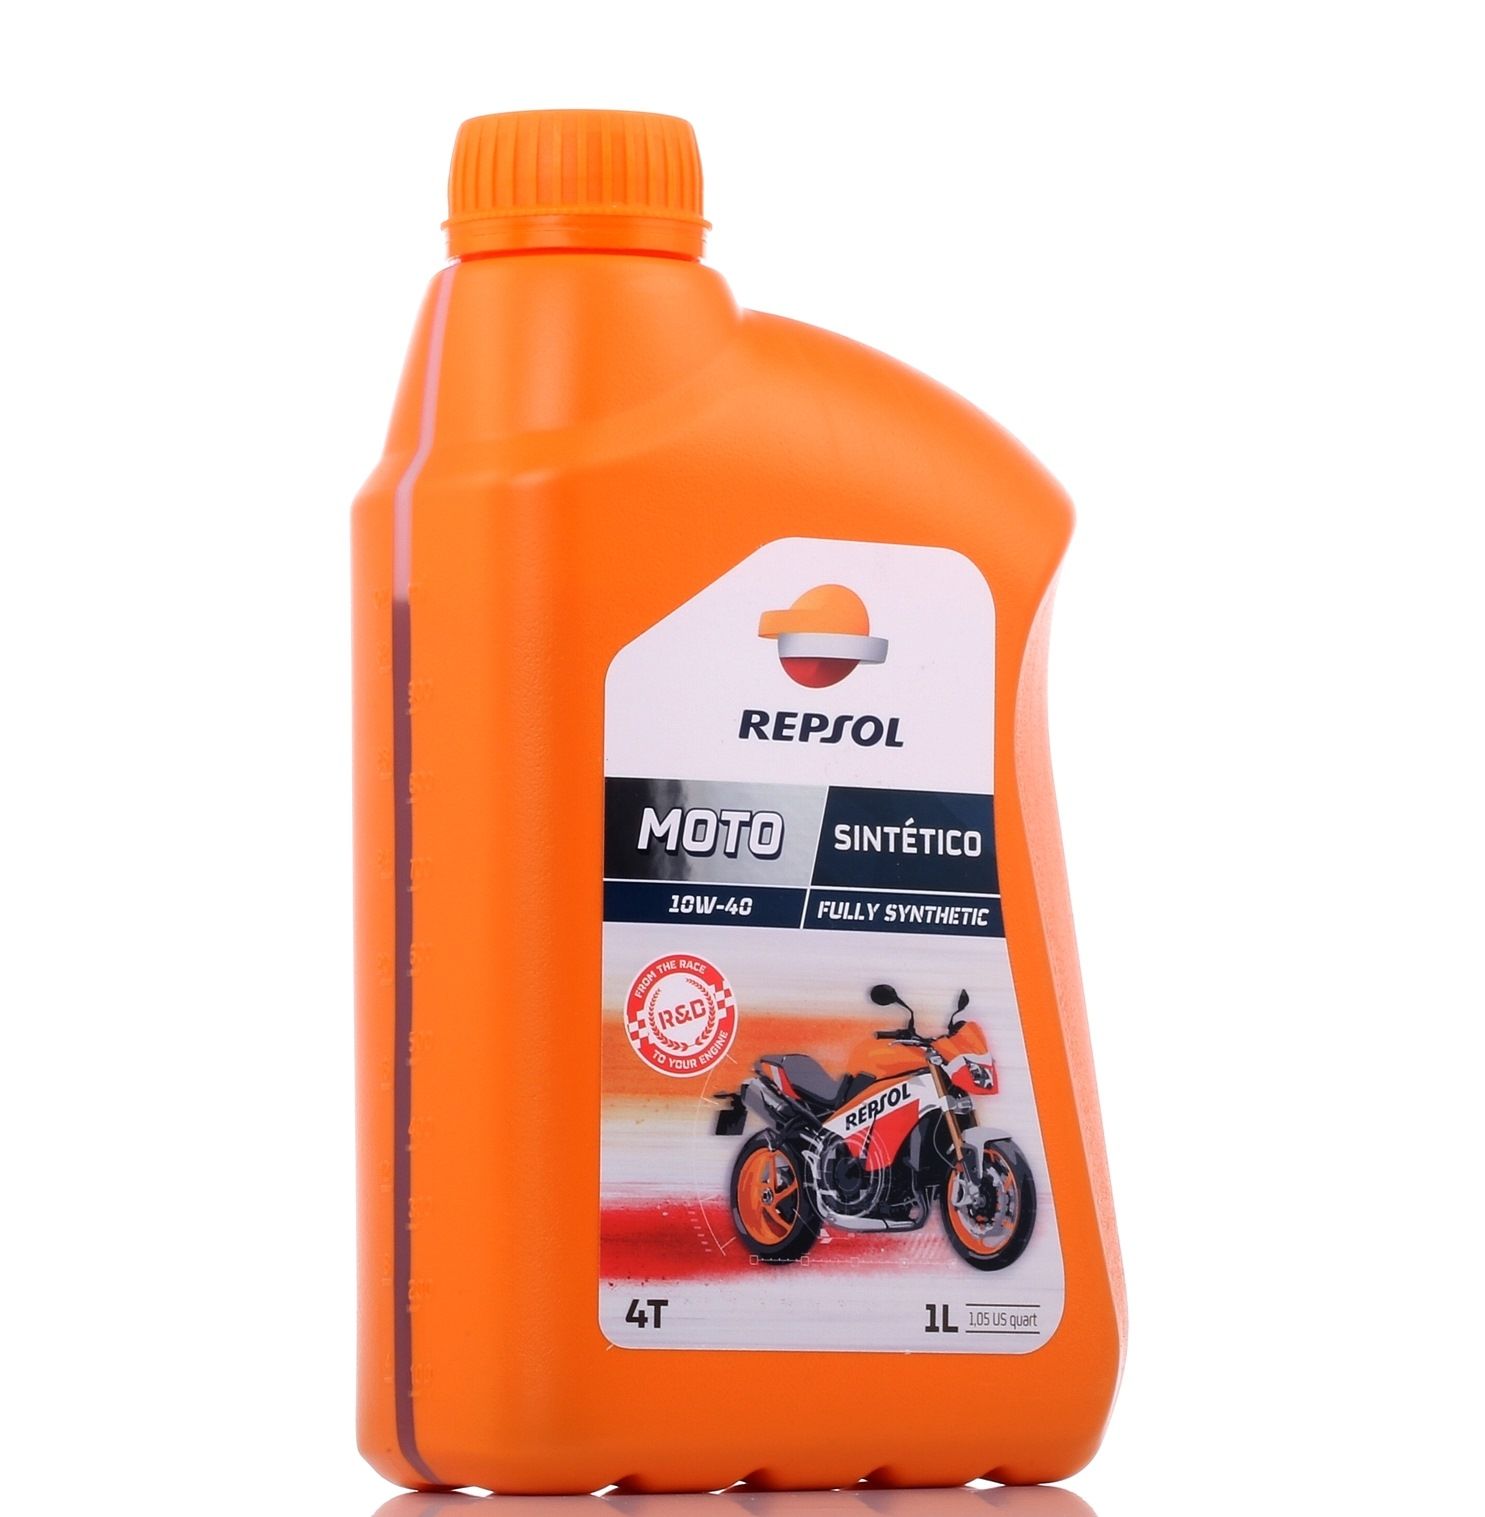 REPSOL MOTO, Sintetico 4T Aceite de motor 10W-40, 1L, Aceite sintetico RP163N51 BMW Ciclomotor Maxi scooters